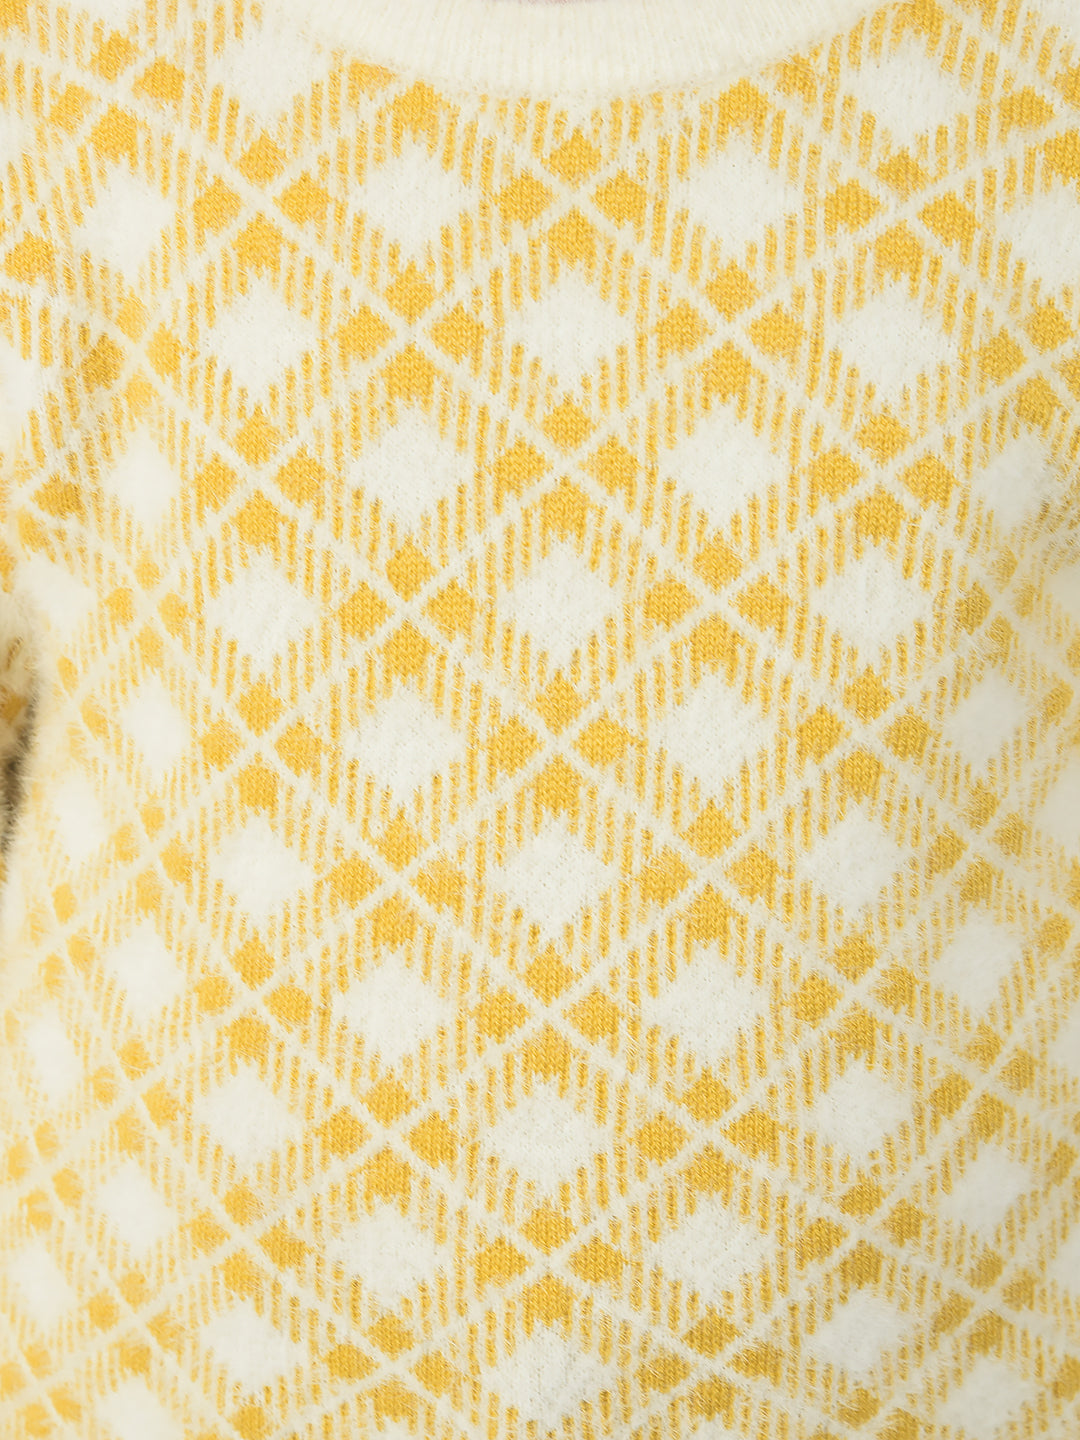  Mustard Yellow Checkered Sweater 